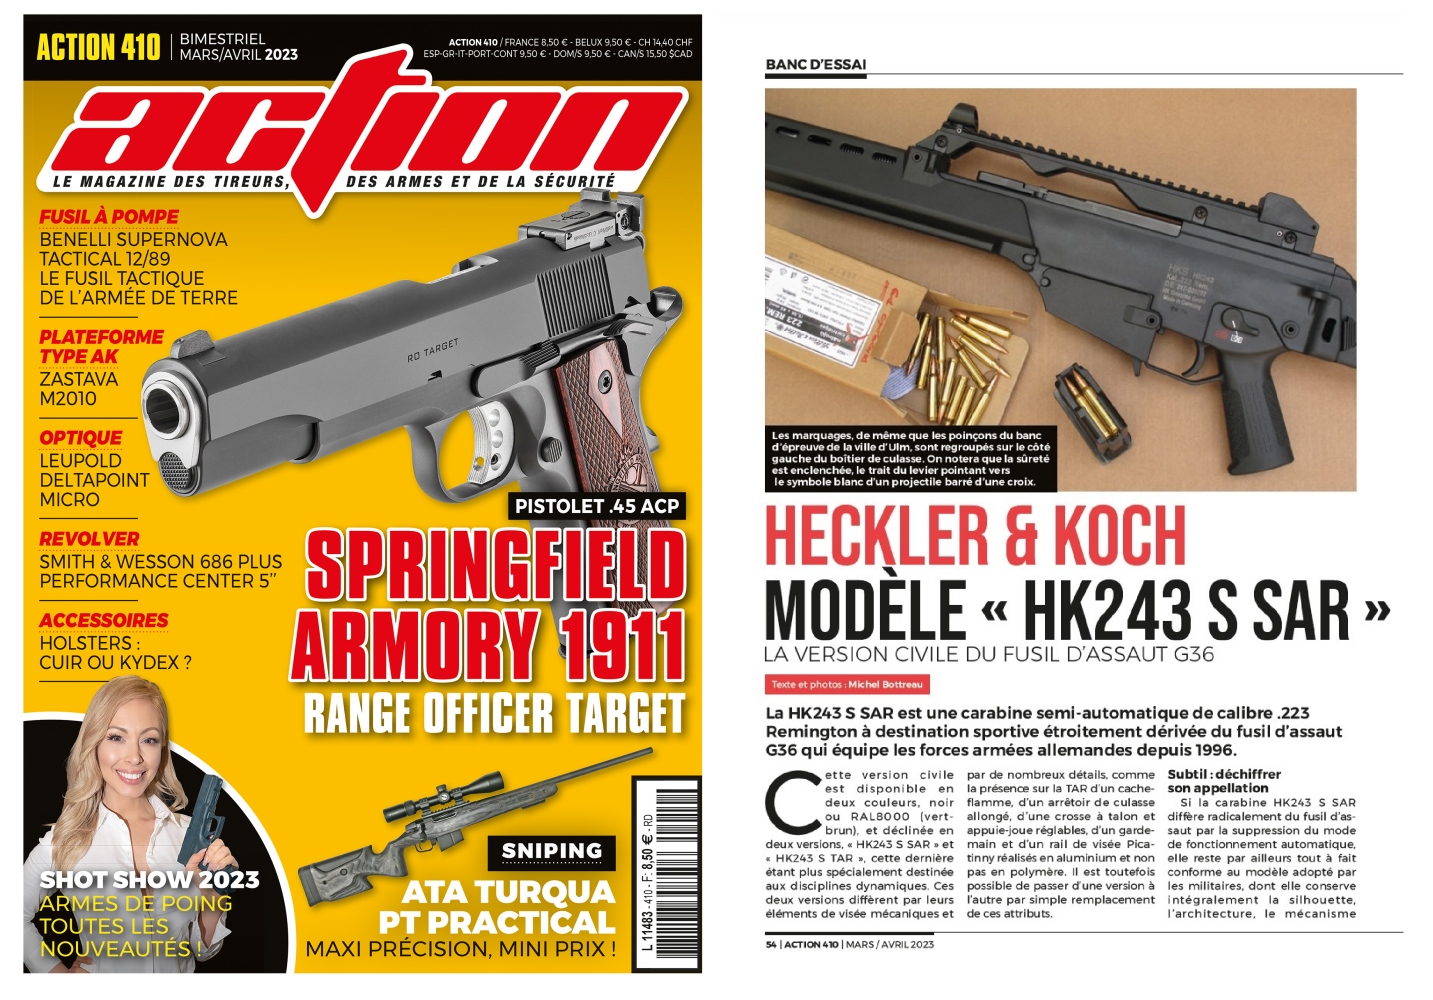 Le banc d’essai de la carabine HK243S SAR a été publié sur 6 pages dans le magazine Action n°410 (mars-avril 2023)